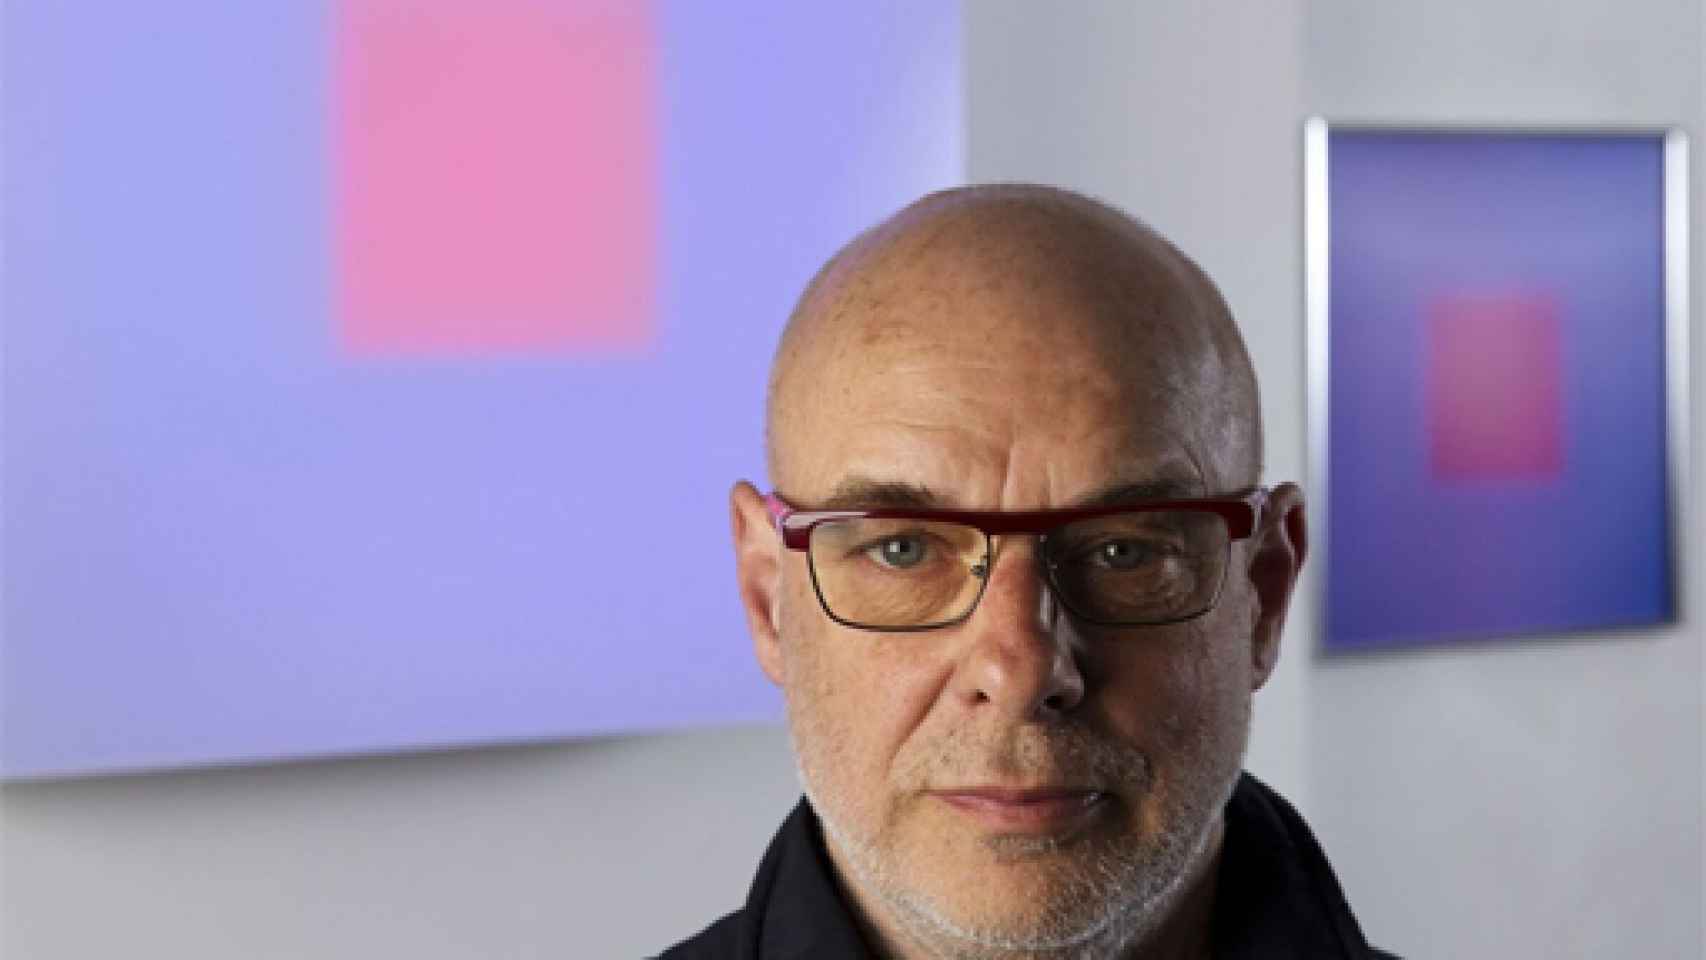 Image: Brian Eno: No me gusta la distinción entre artistas y público